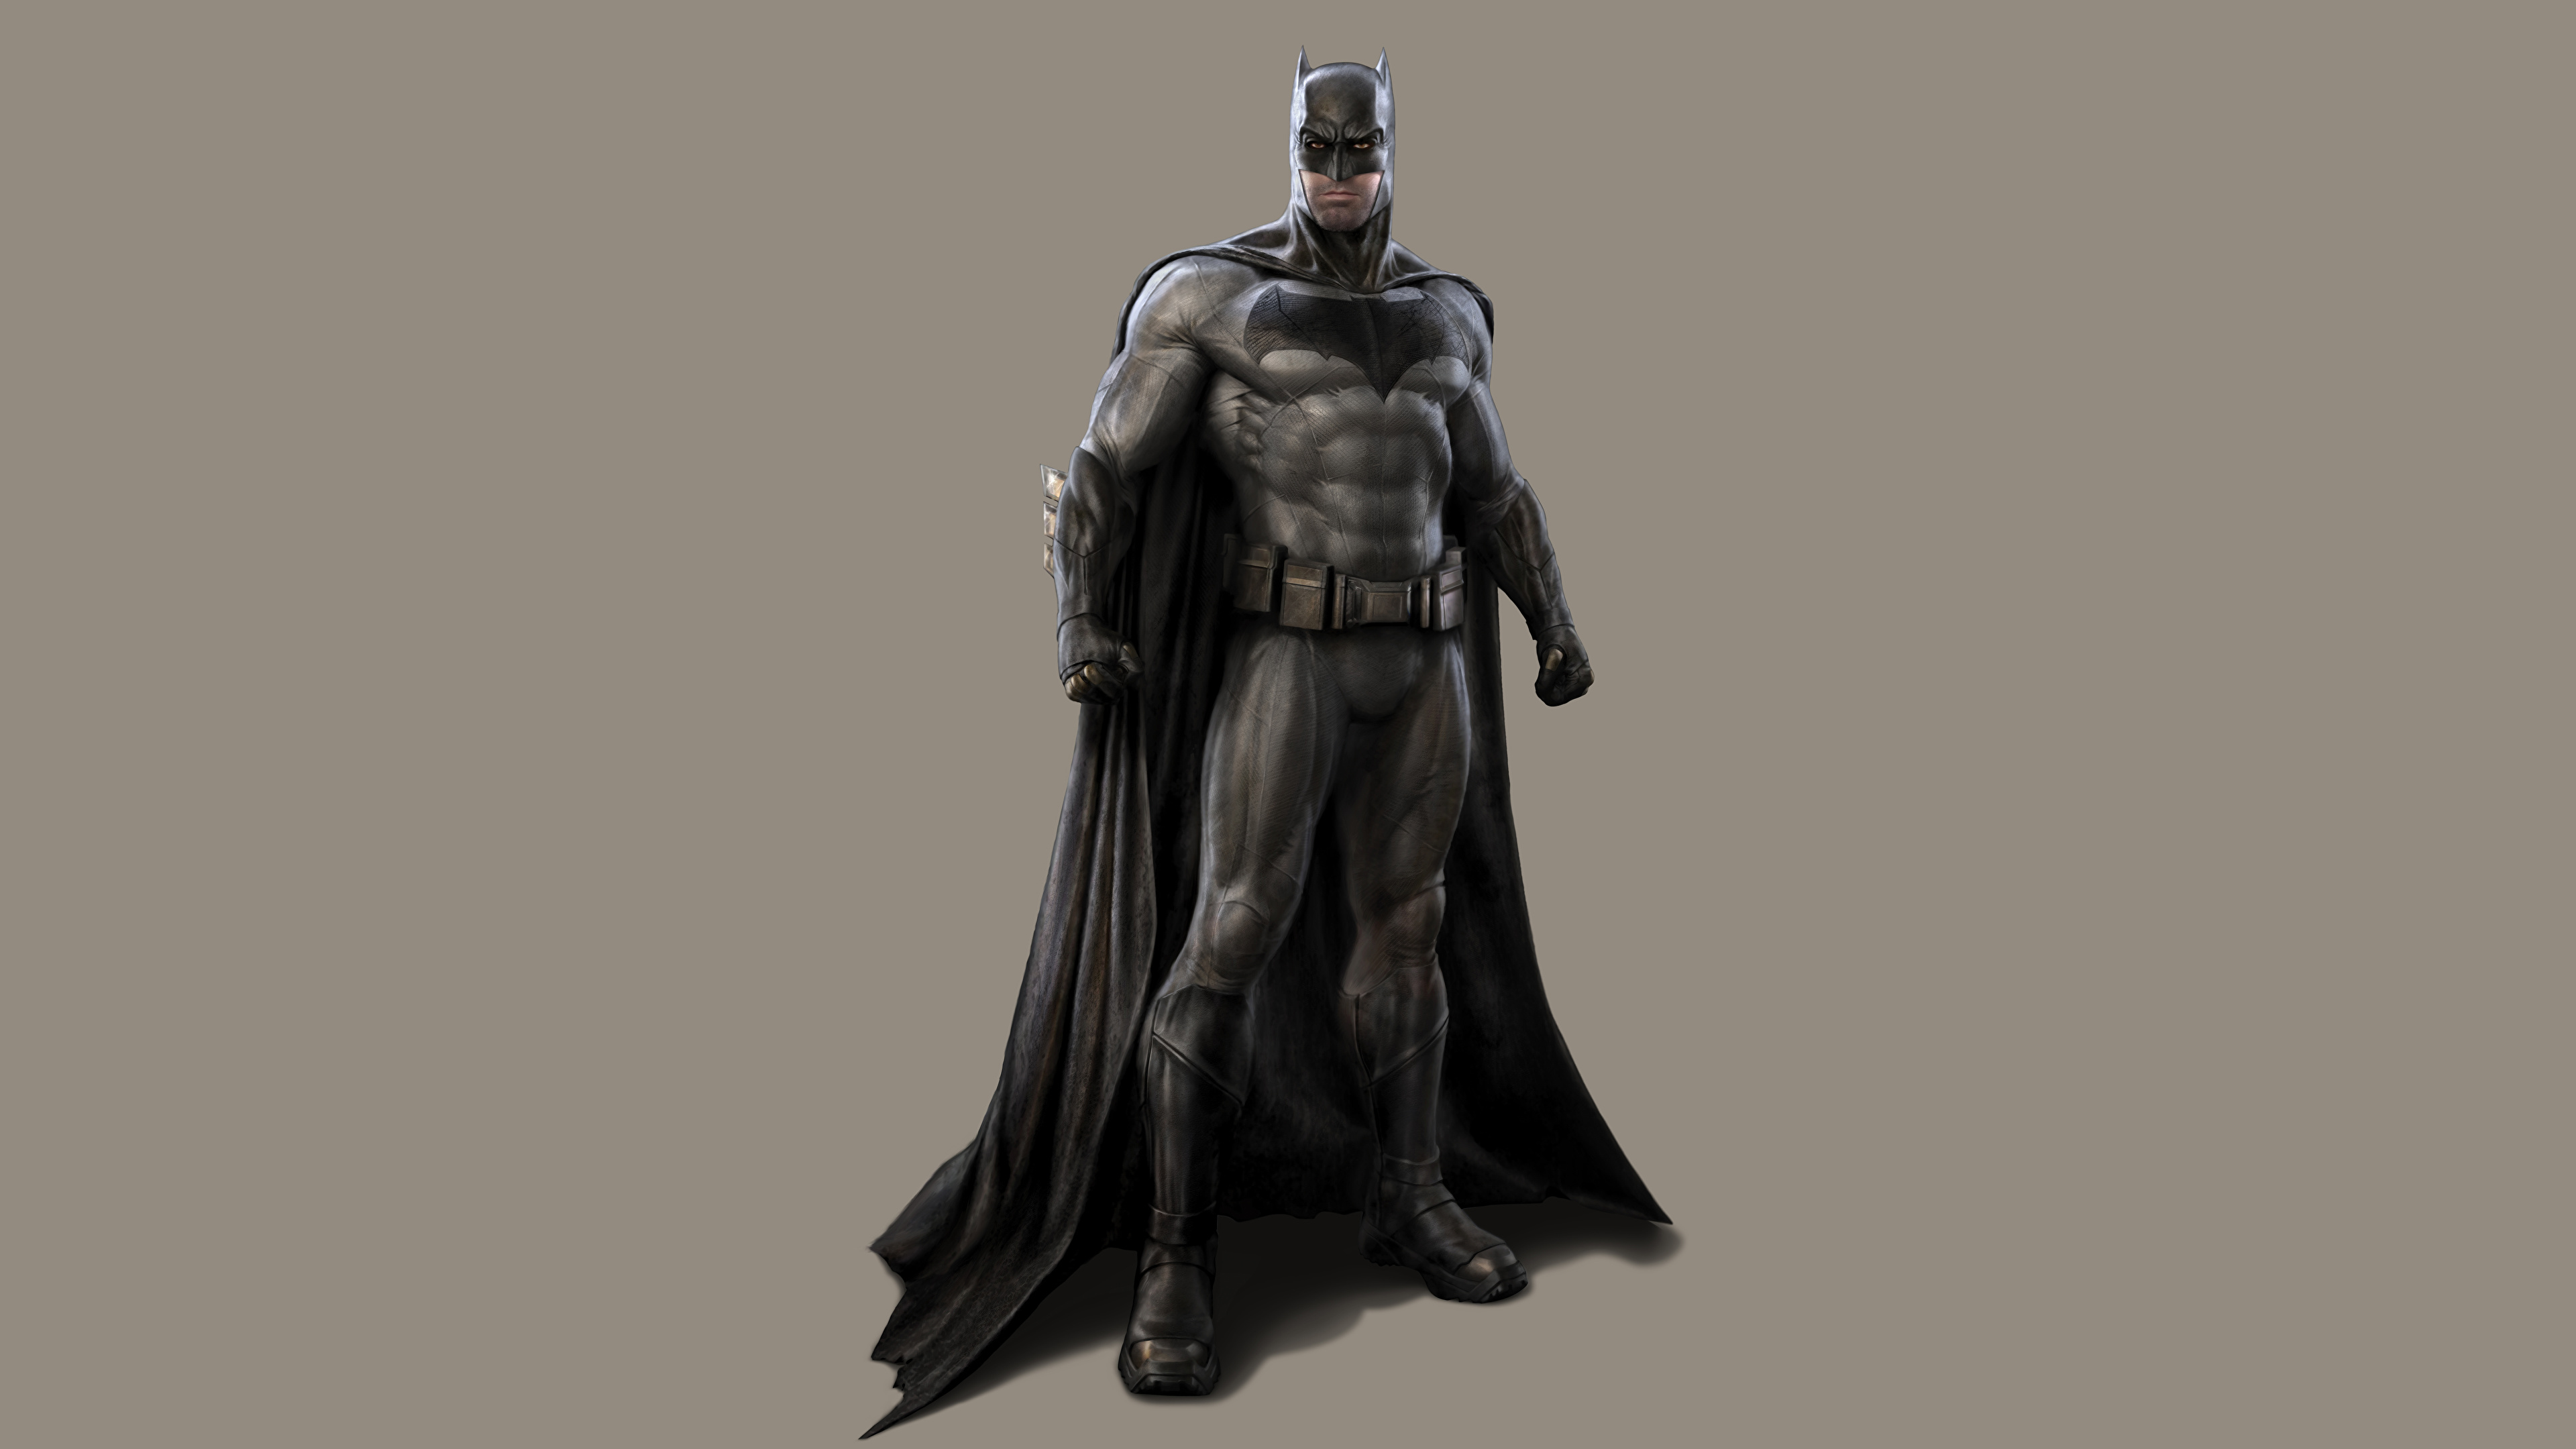 3840x2160 Batman Héroe Batman v Superman: el amanecer de la justicia Película Fantasía